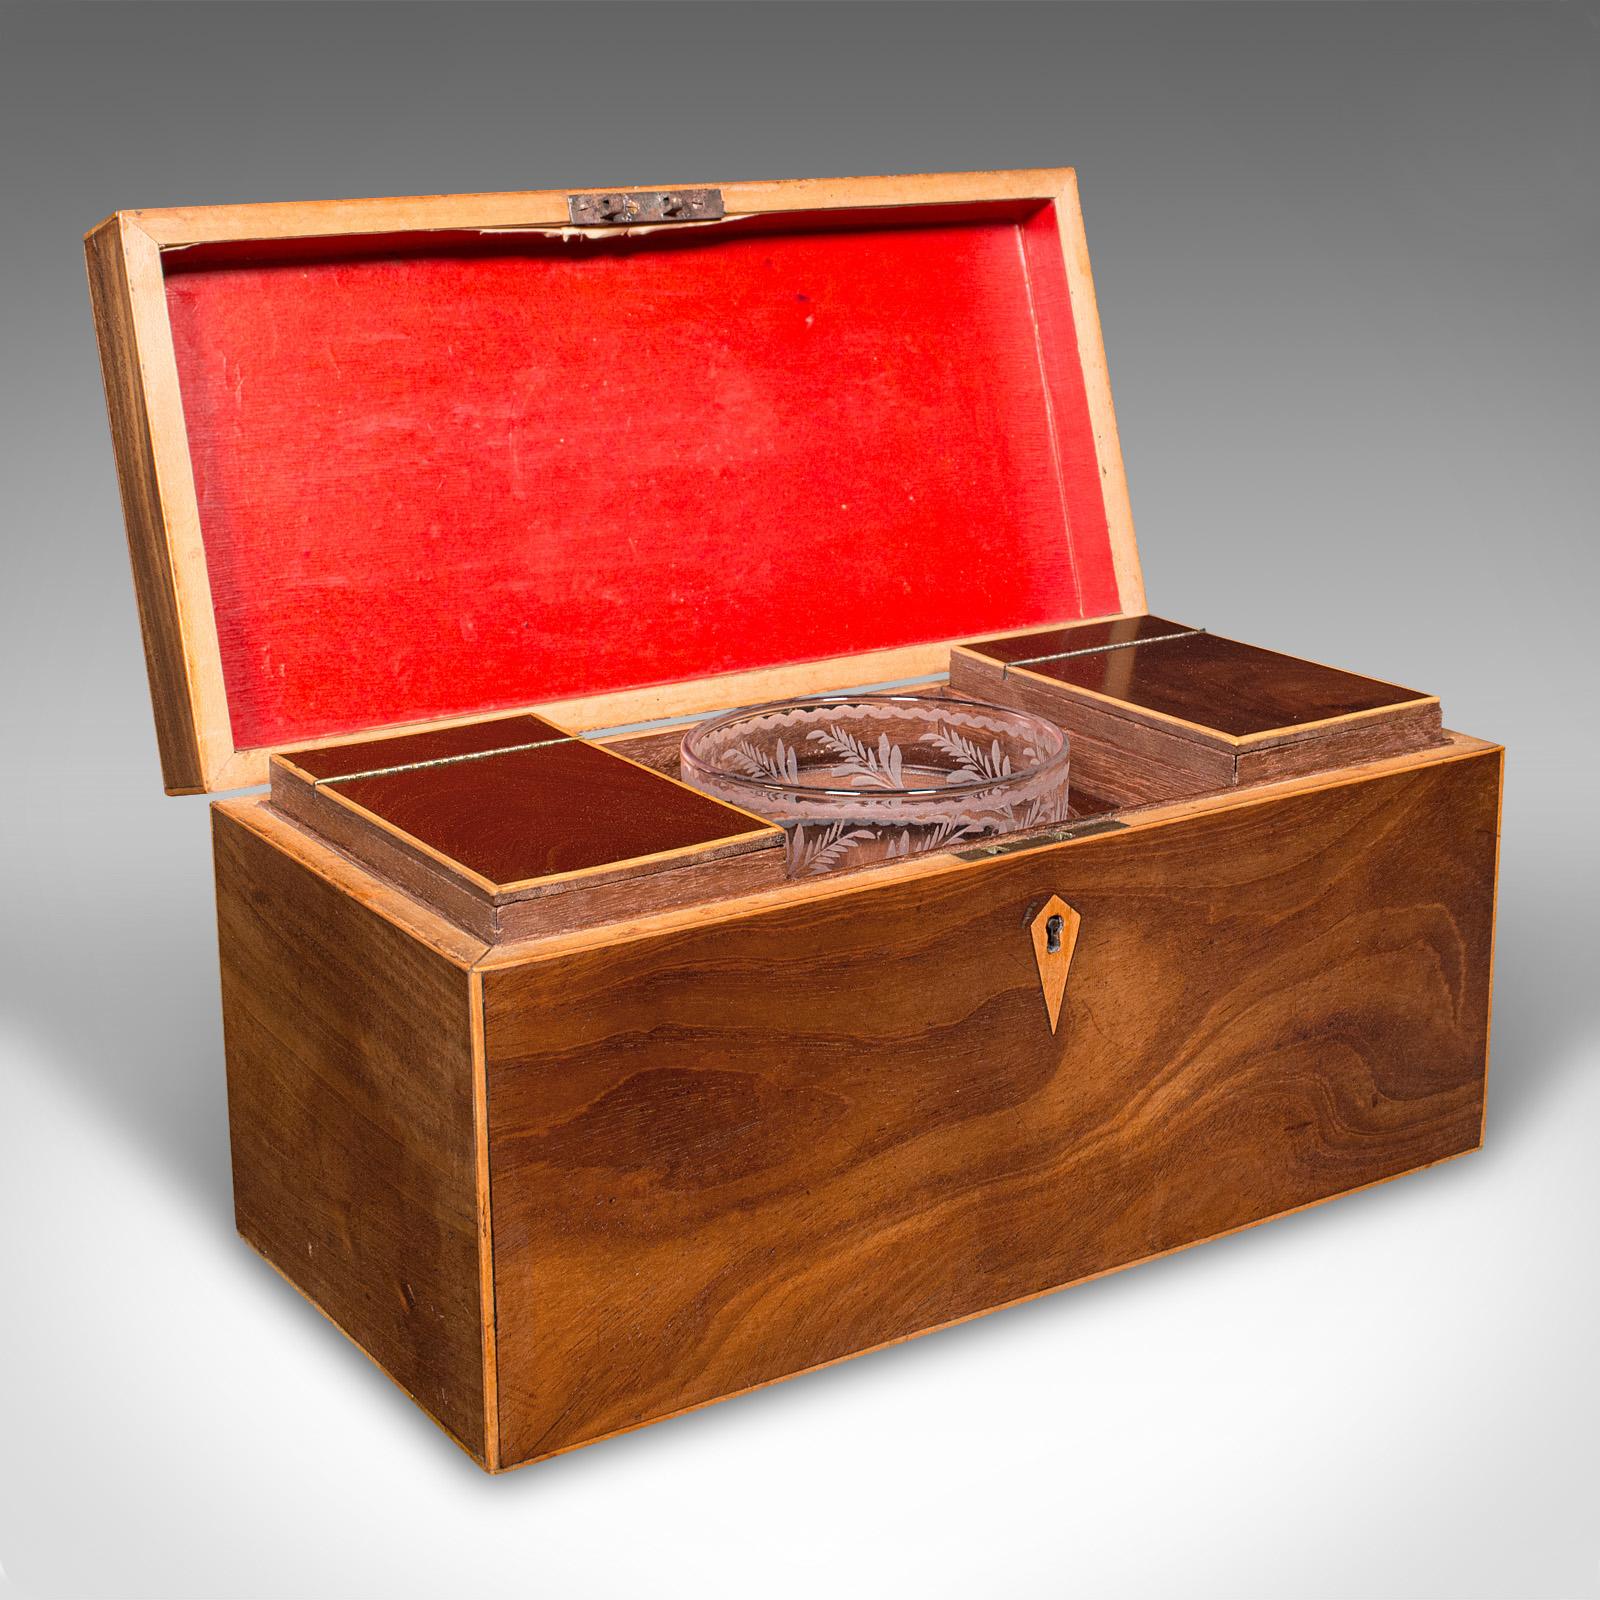 Il s'agit d'une boîte à thé ancienne. Récipient anglais en bois de rose et de satin avec mélangeur en verre, datant de la fin de la période Regency, vers 1830.

Délicieux caddy d'époque Régence avec de beaux détails et de belles